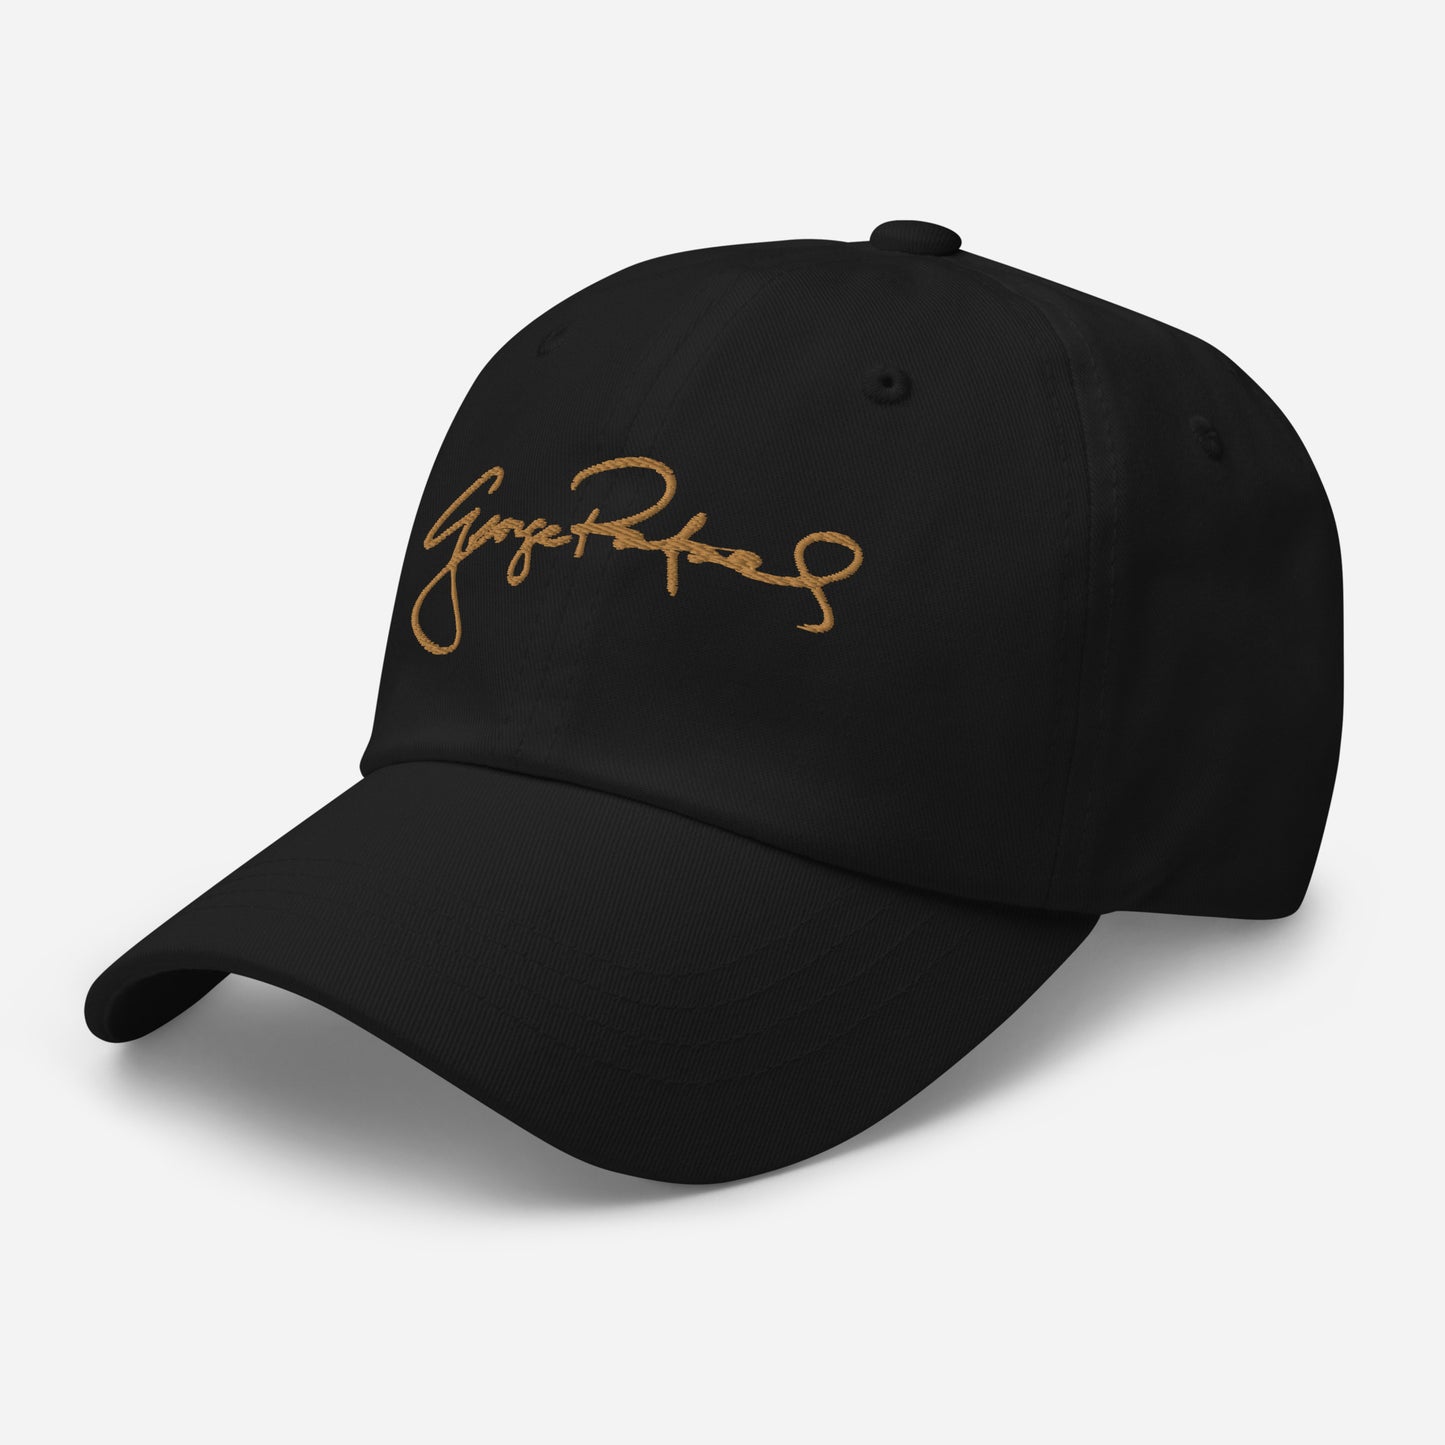 George Rafael Signature Dad hat